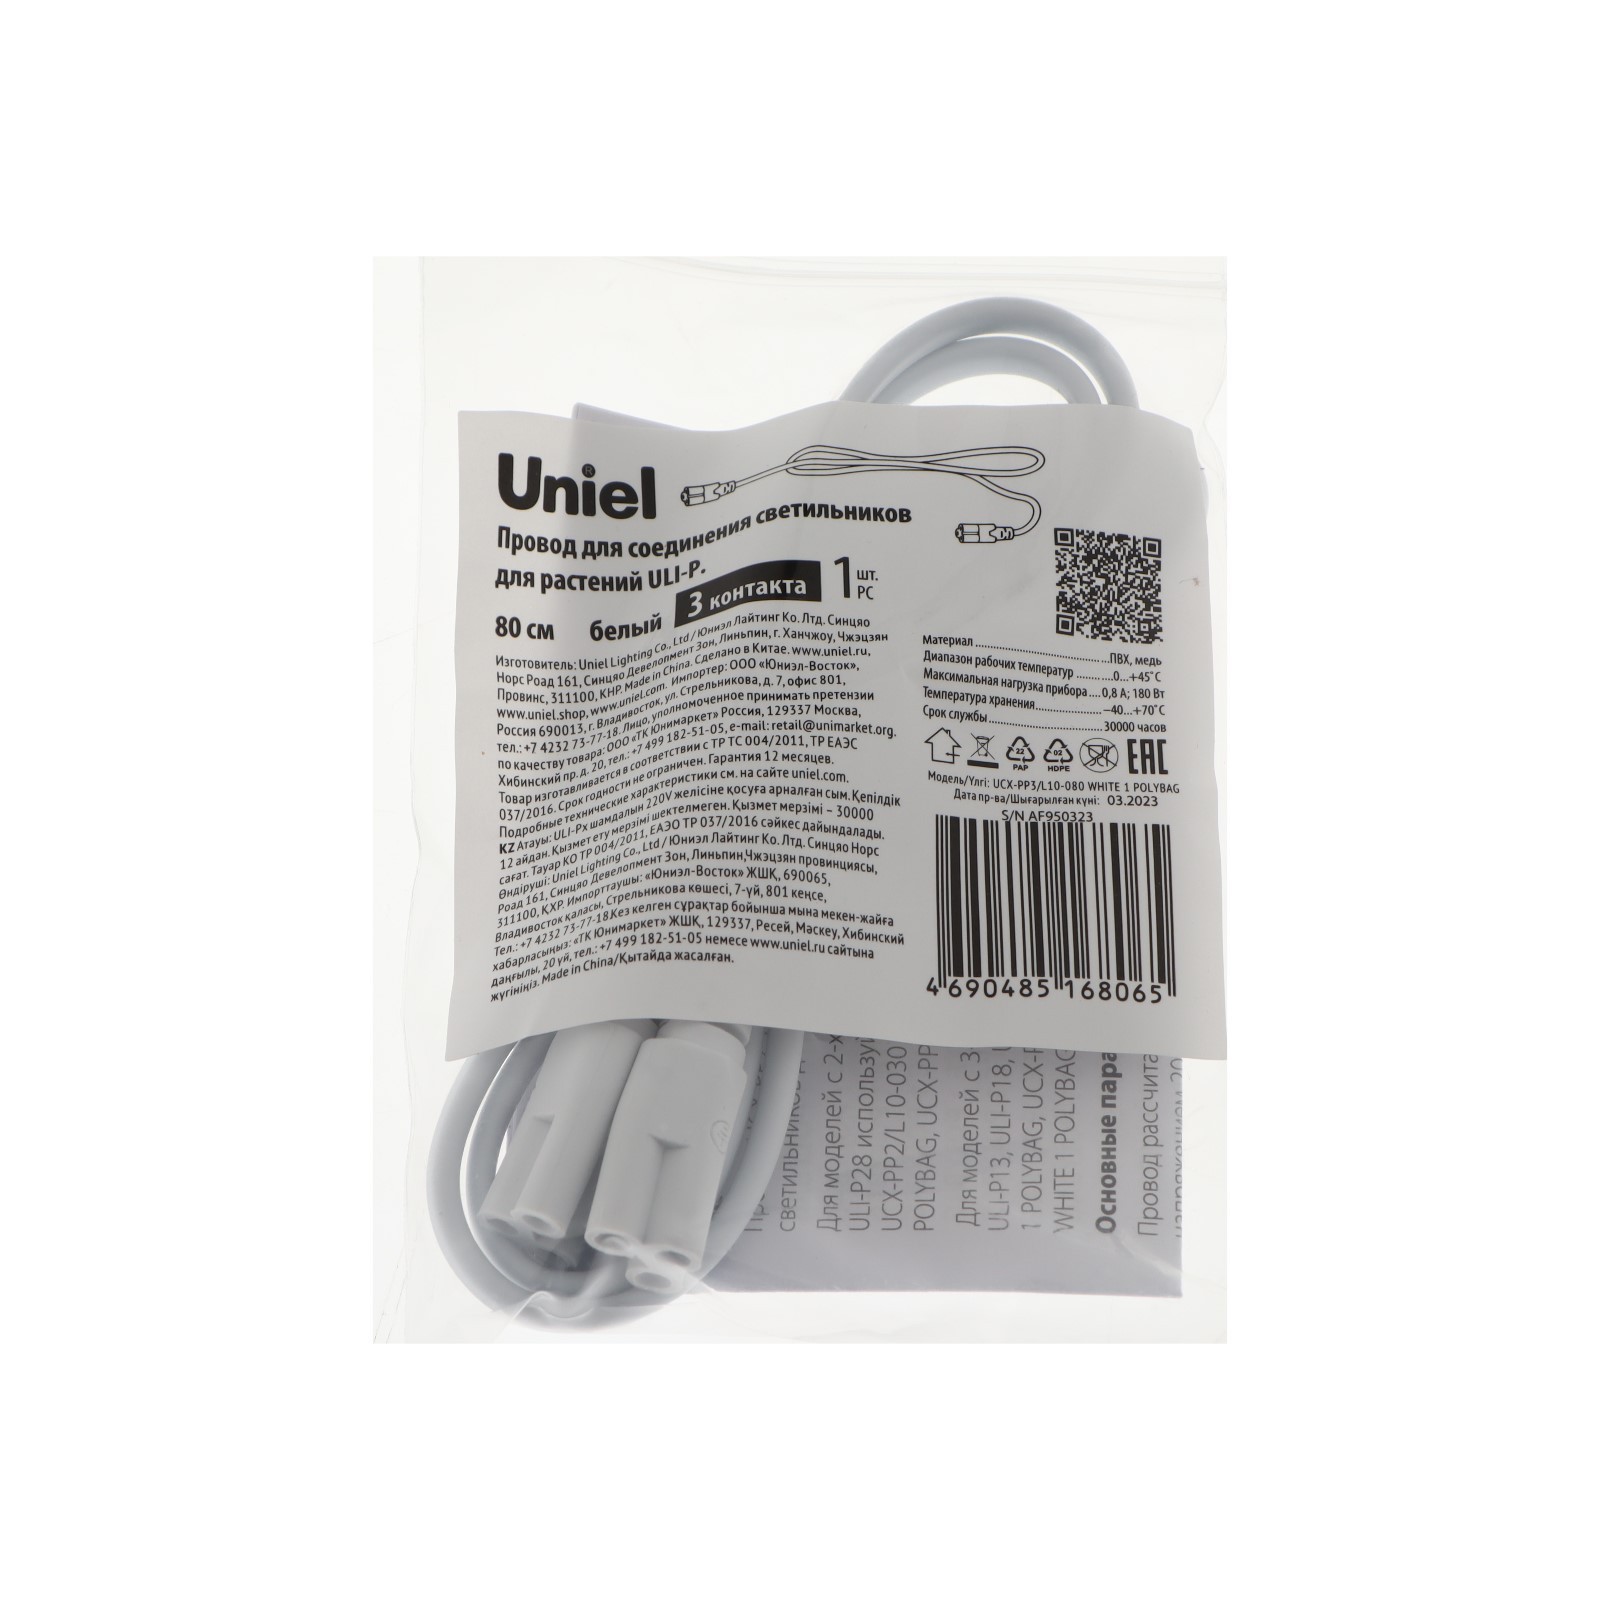  для соединения светильников для растений ULI-P Uniel, 80 см, 3 .